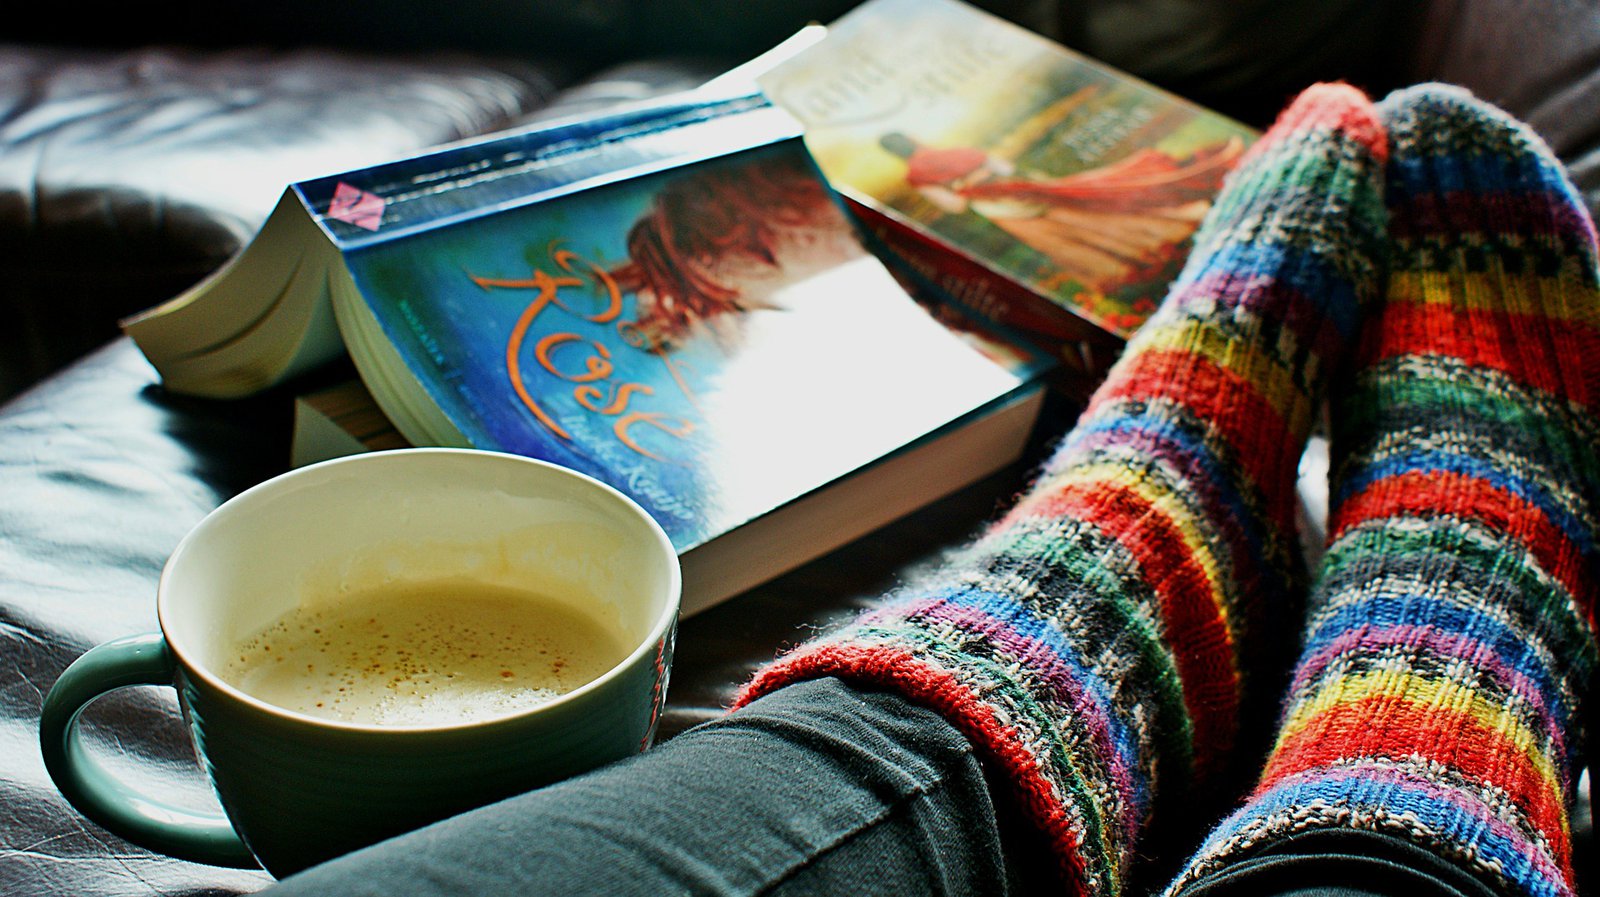 Mit bunten, gestrickten SOcken bekleidete Füße. Drumherum eine Kaffeetasse und zwei Bücher.